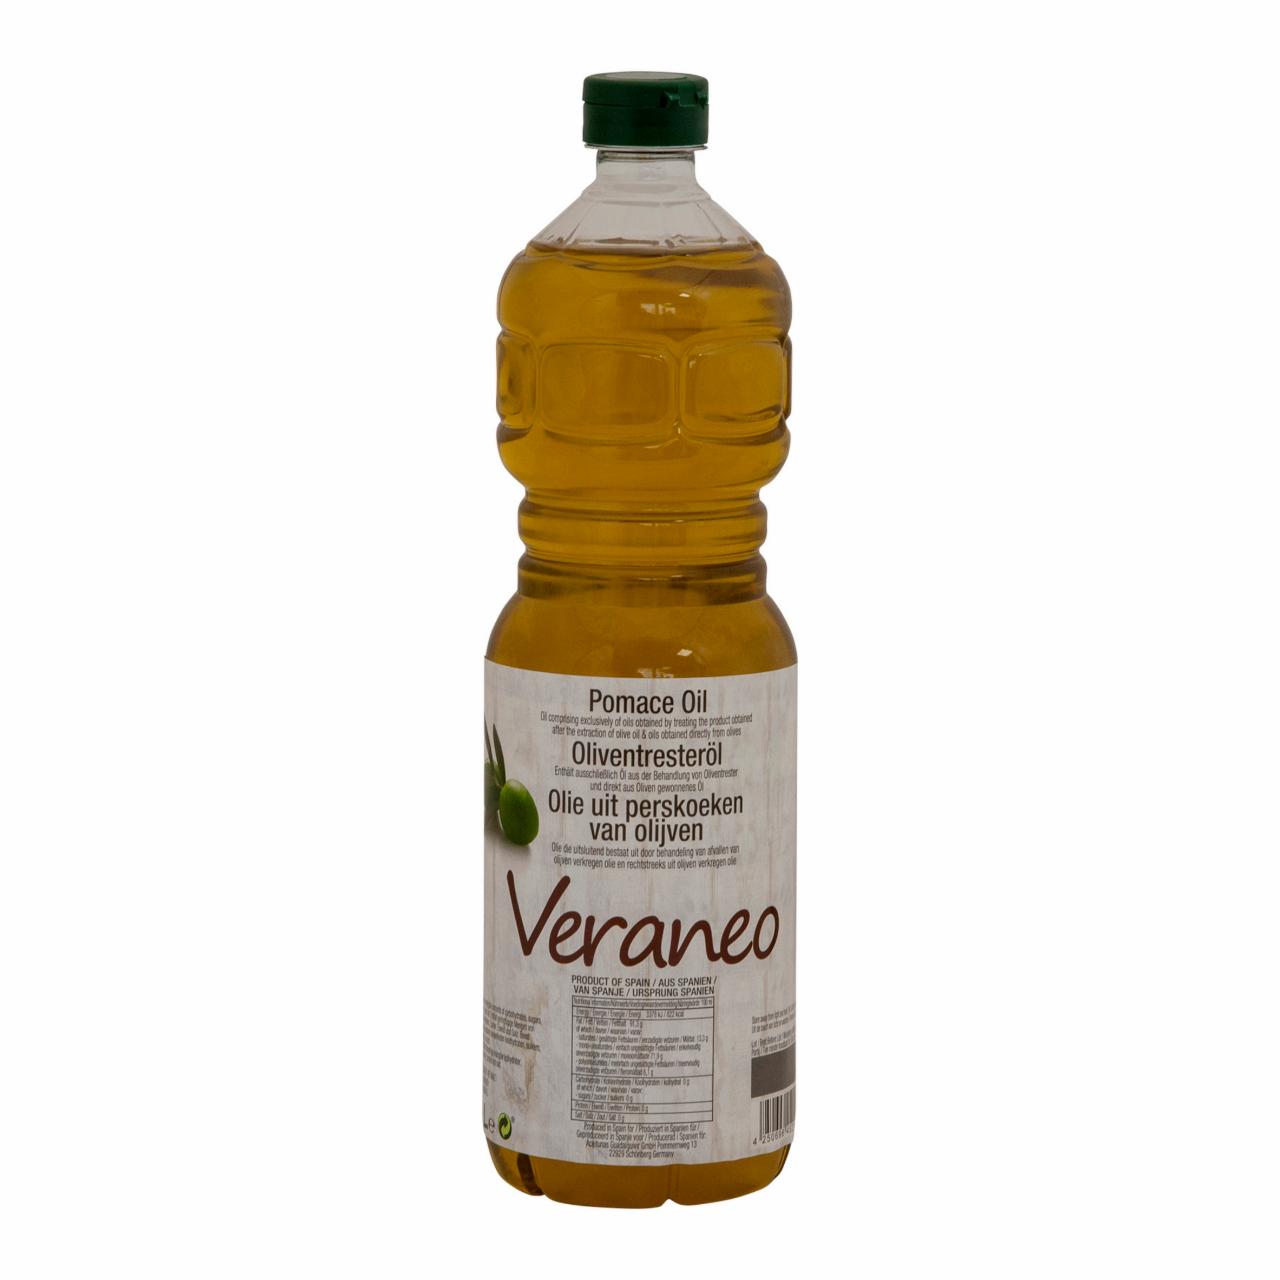 Képek - Veraneo pomace olívaolaj 1 l